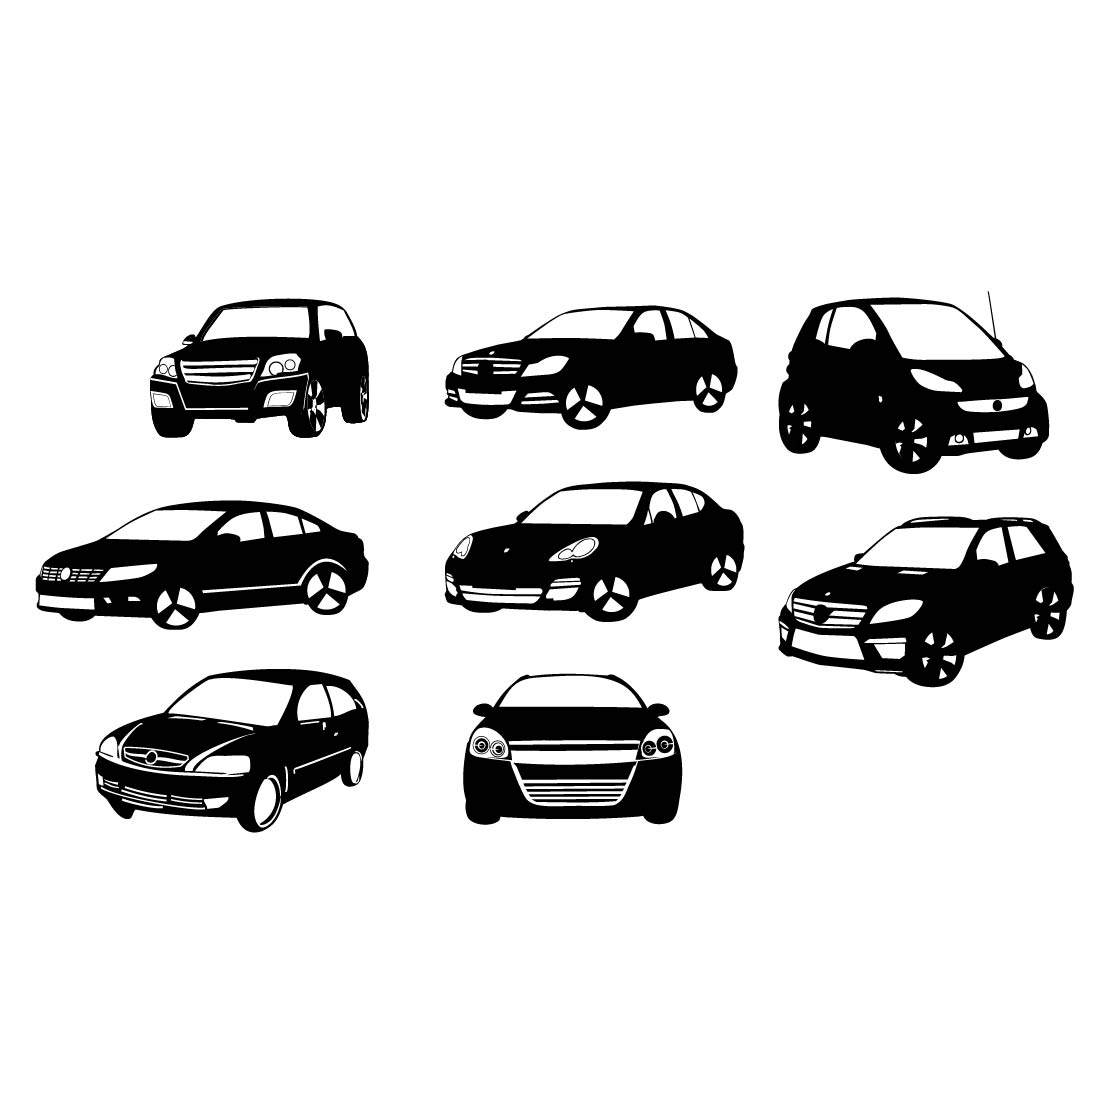 Car silhouette svg, cars svg files, vehicle svg, car clipart, race car svg, sedan svg, Hatchback svg, station wagon svg, preview image.